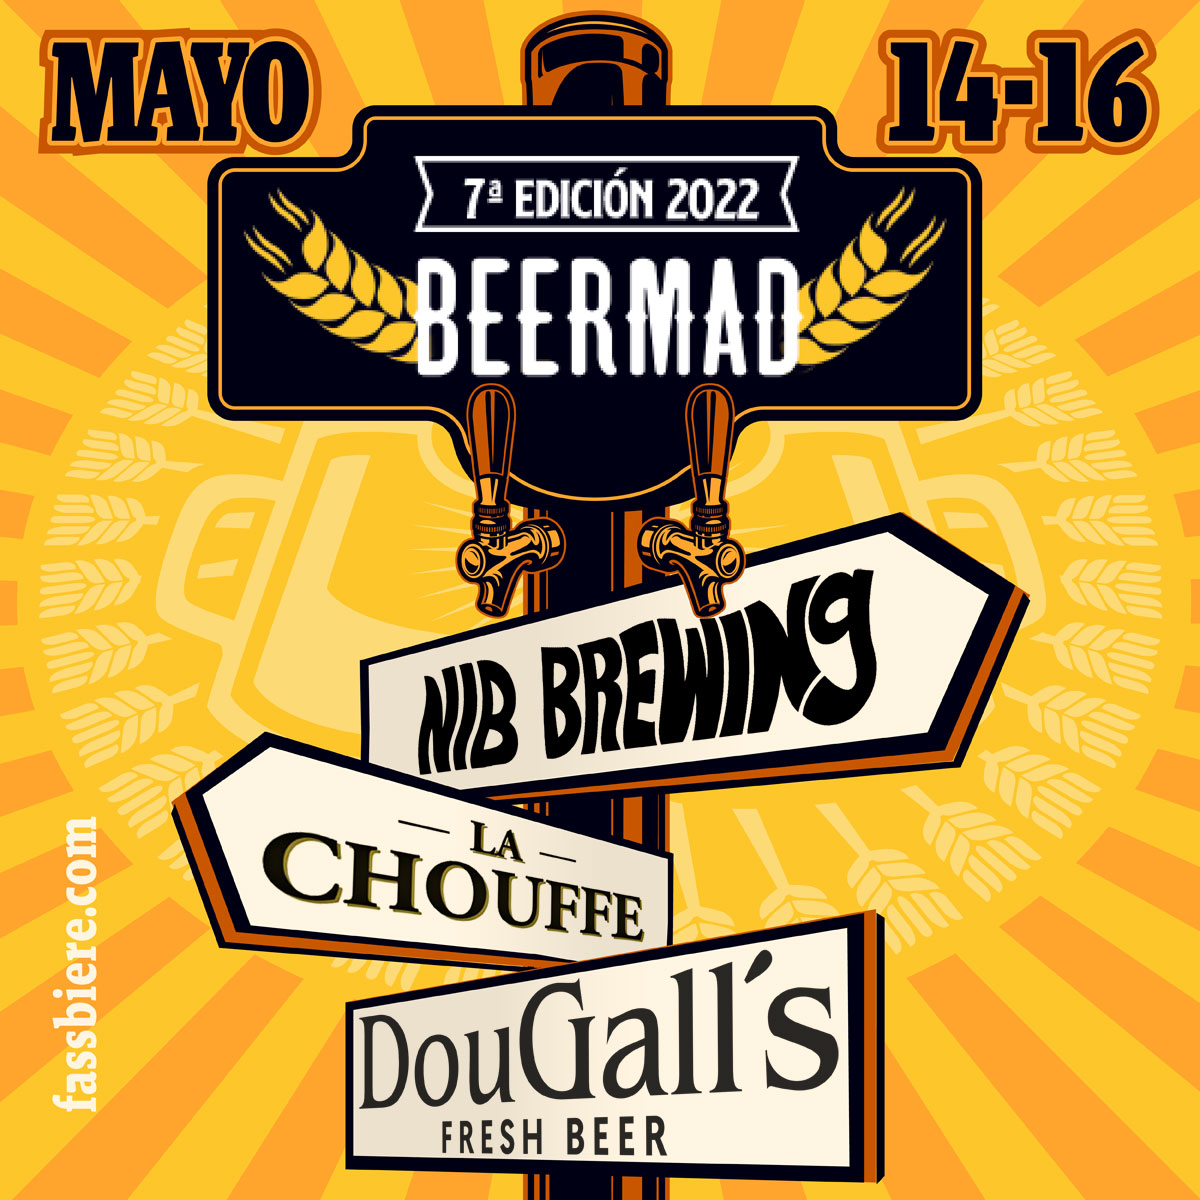 Fassbiere presente con las cervezas Chouffe, NIB Brewing y DouGall's en la séptima edición de Beermad 2022